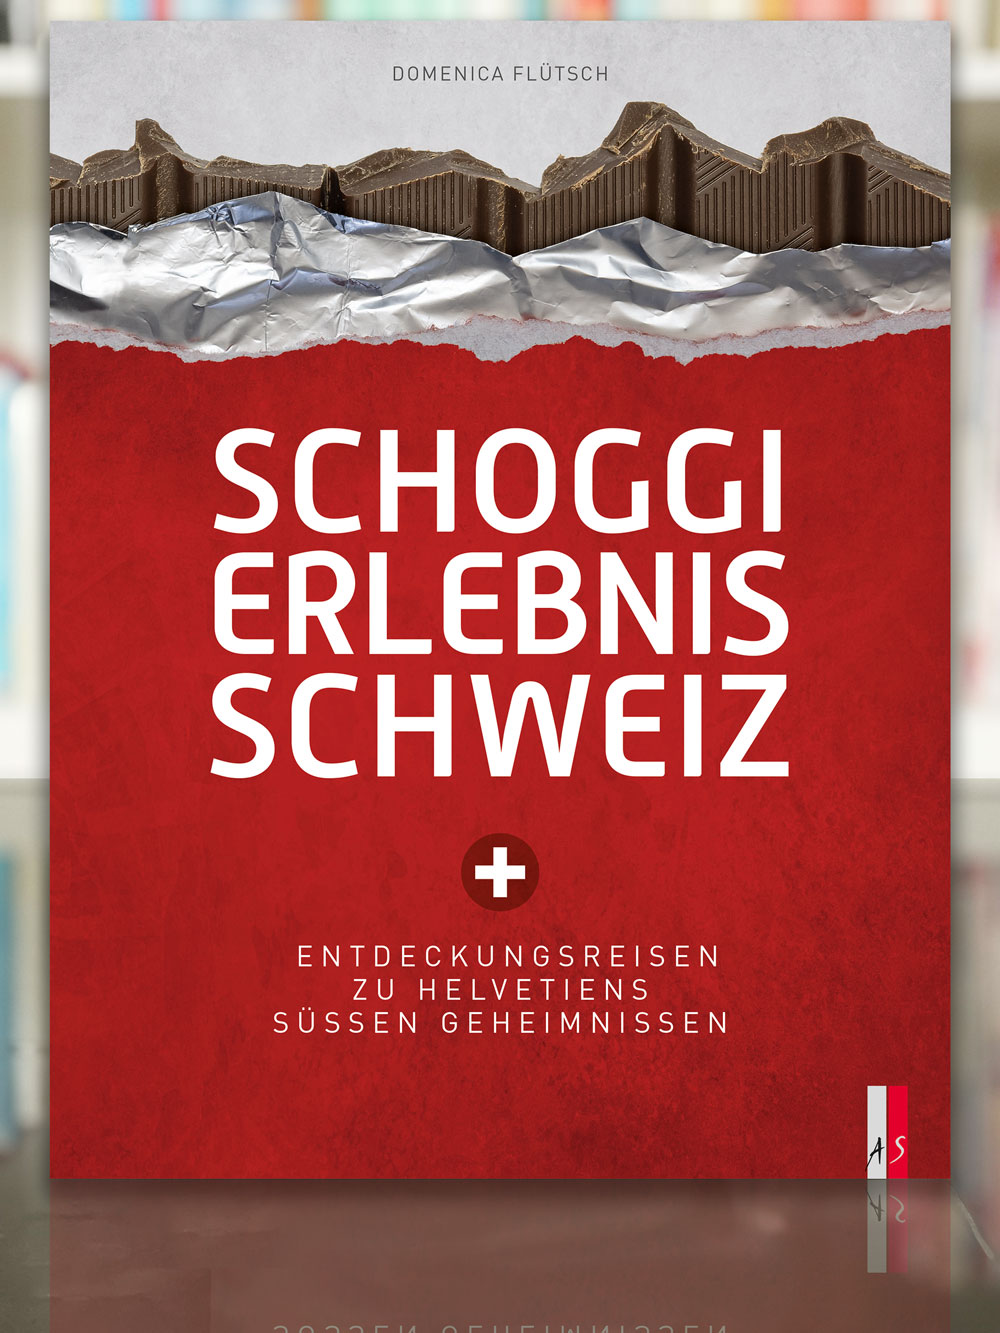 Domenica Flütsch, Schoggi Erlebnis Schweiz. 2023, AS Verlag